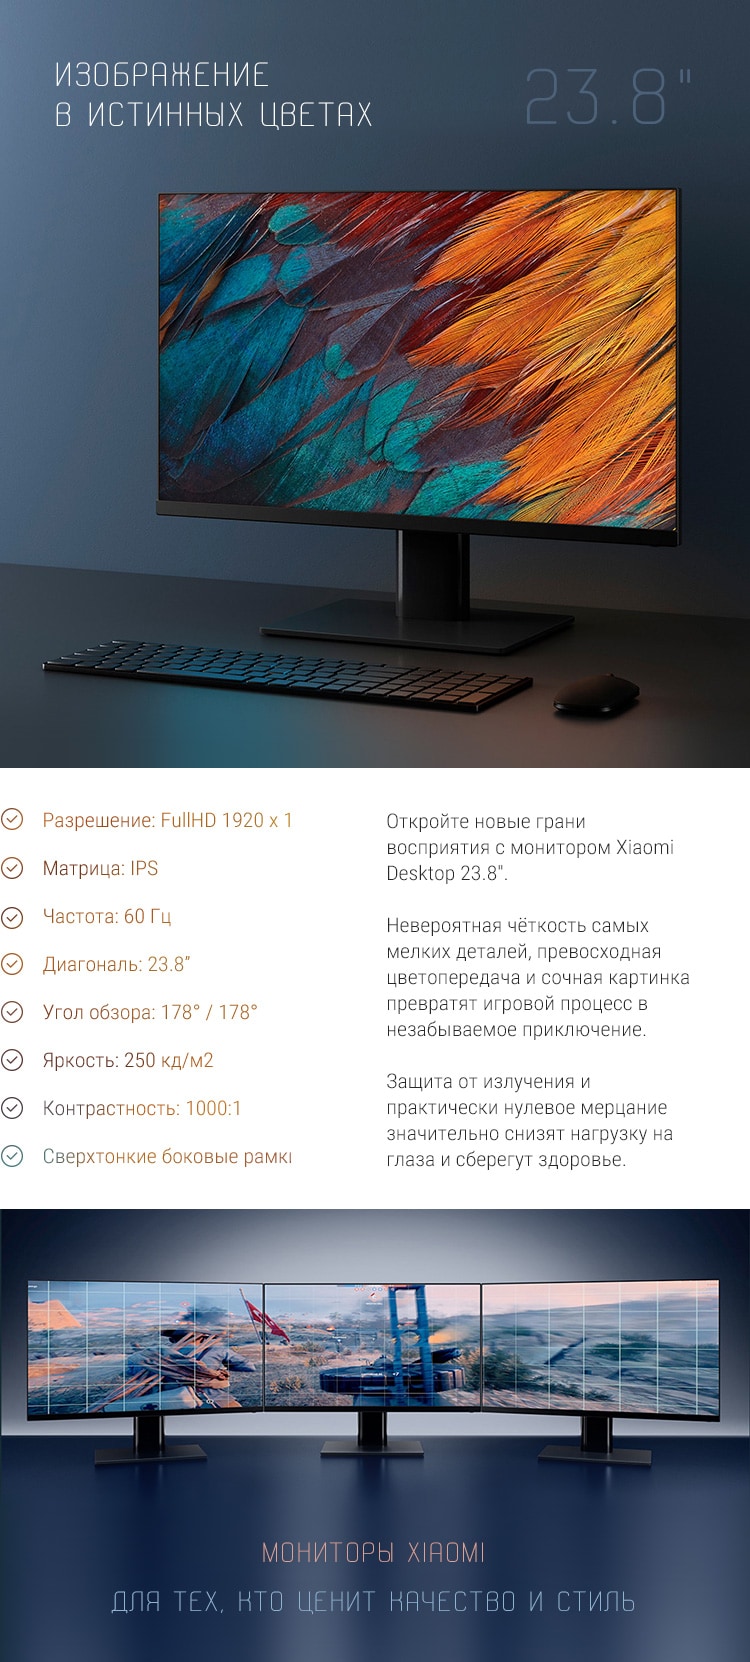 Поступление мониторов Xiaomi Desktop 23.8"